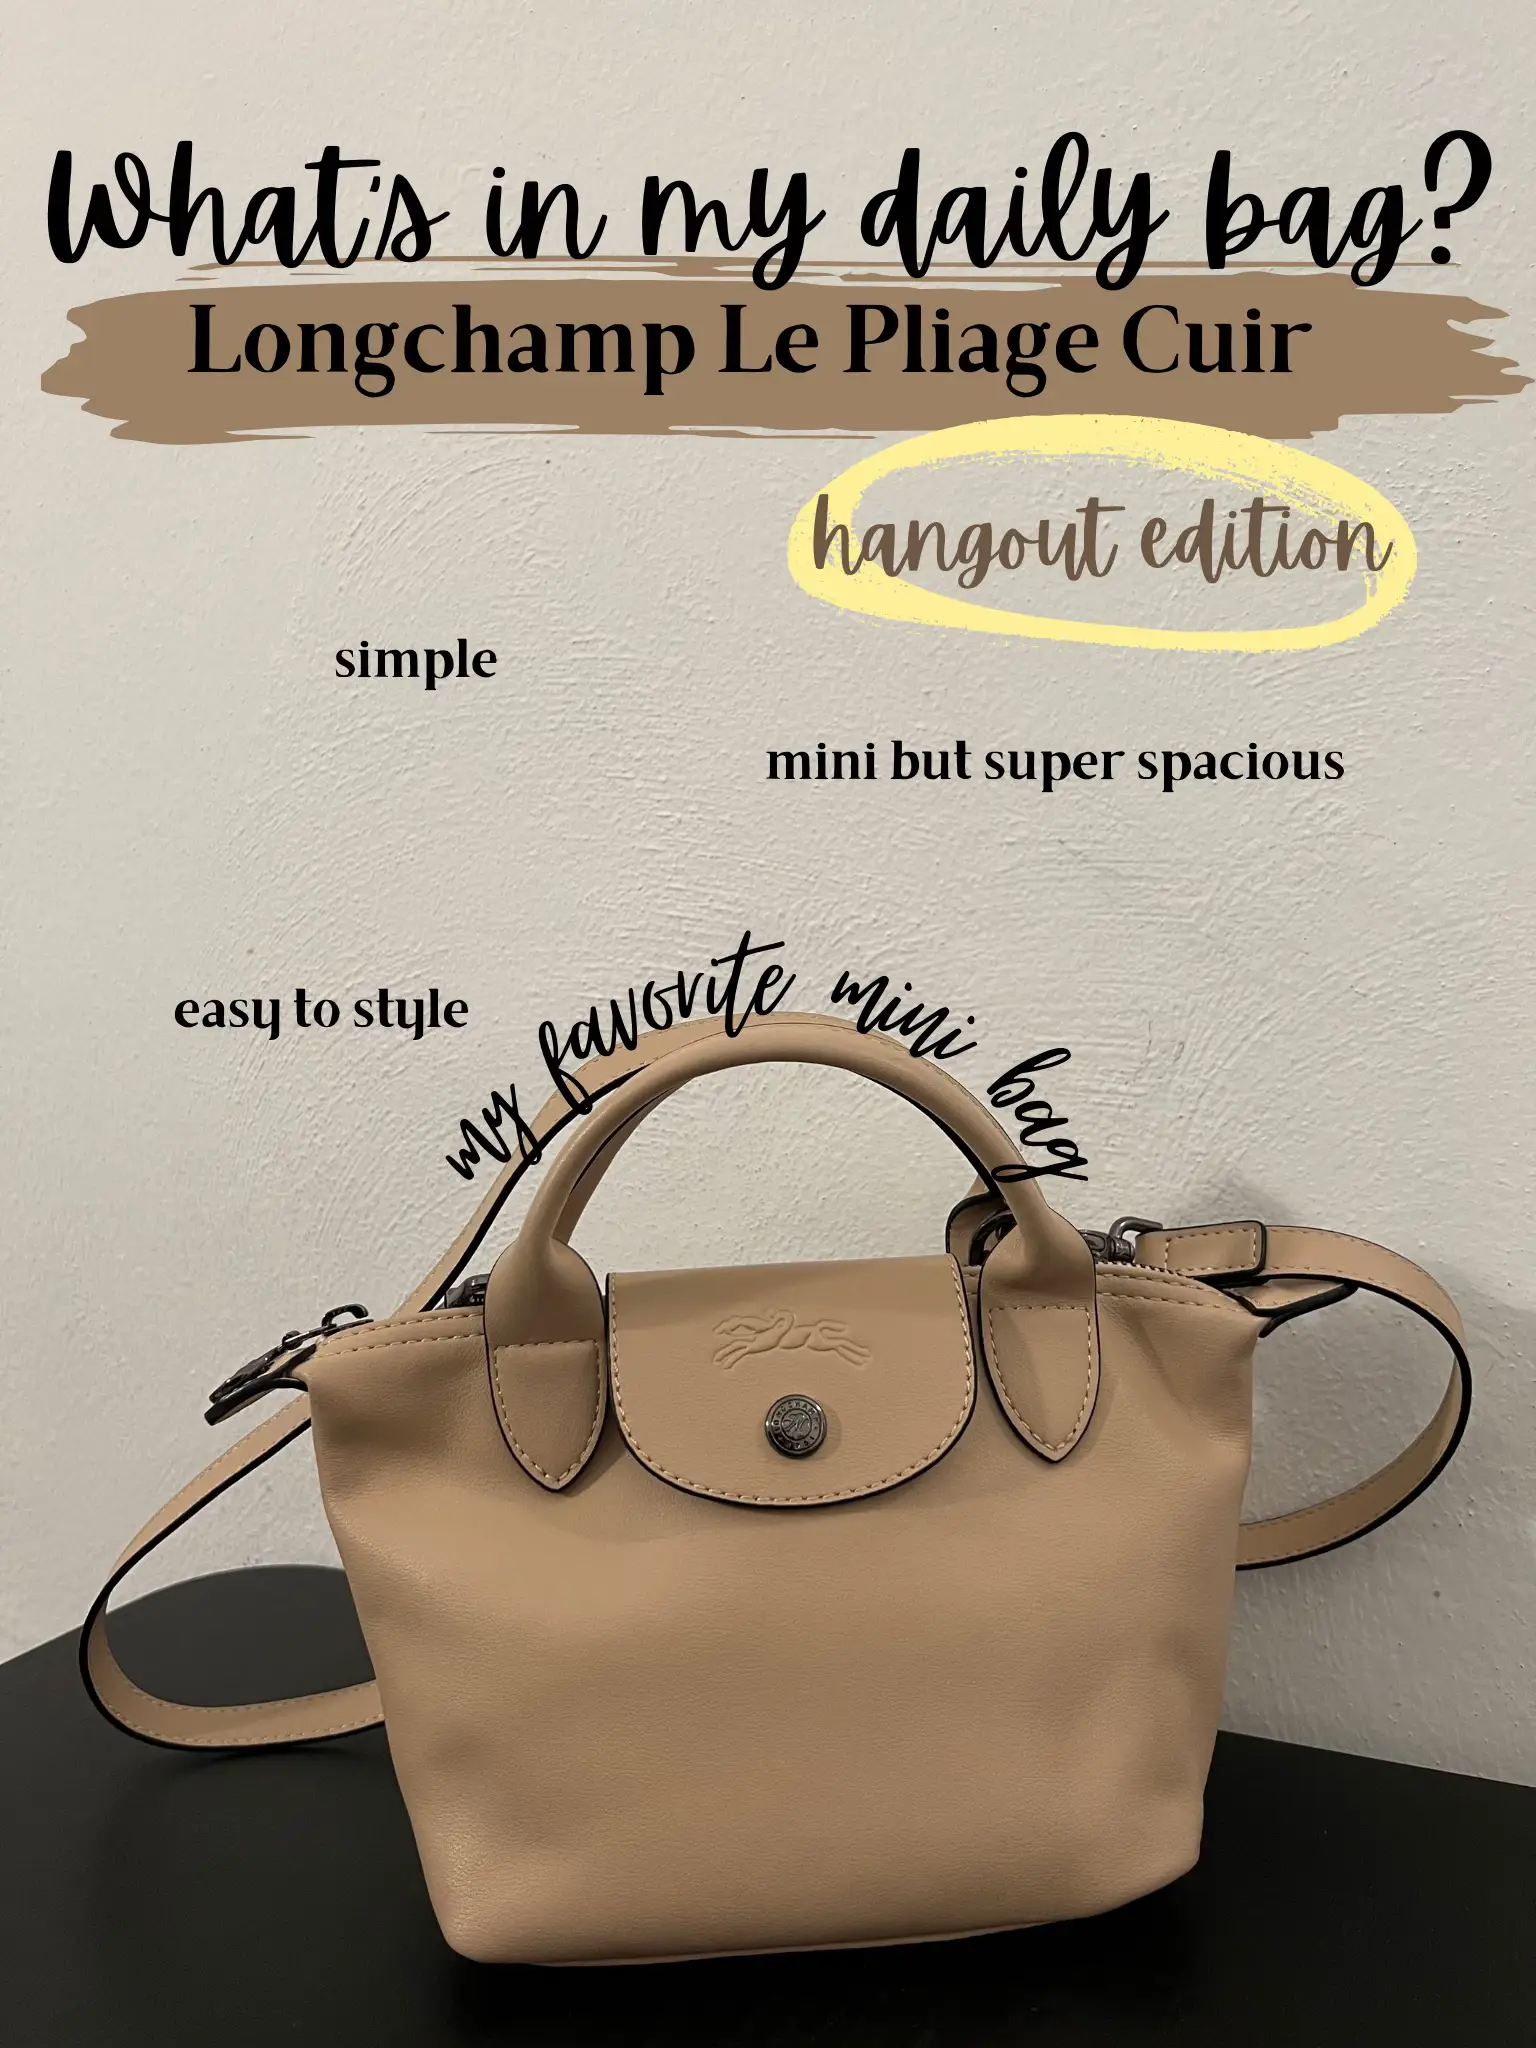 Longchamp Open Box - Longchamp Le Pliage Cuir Top Handle Bag in